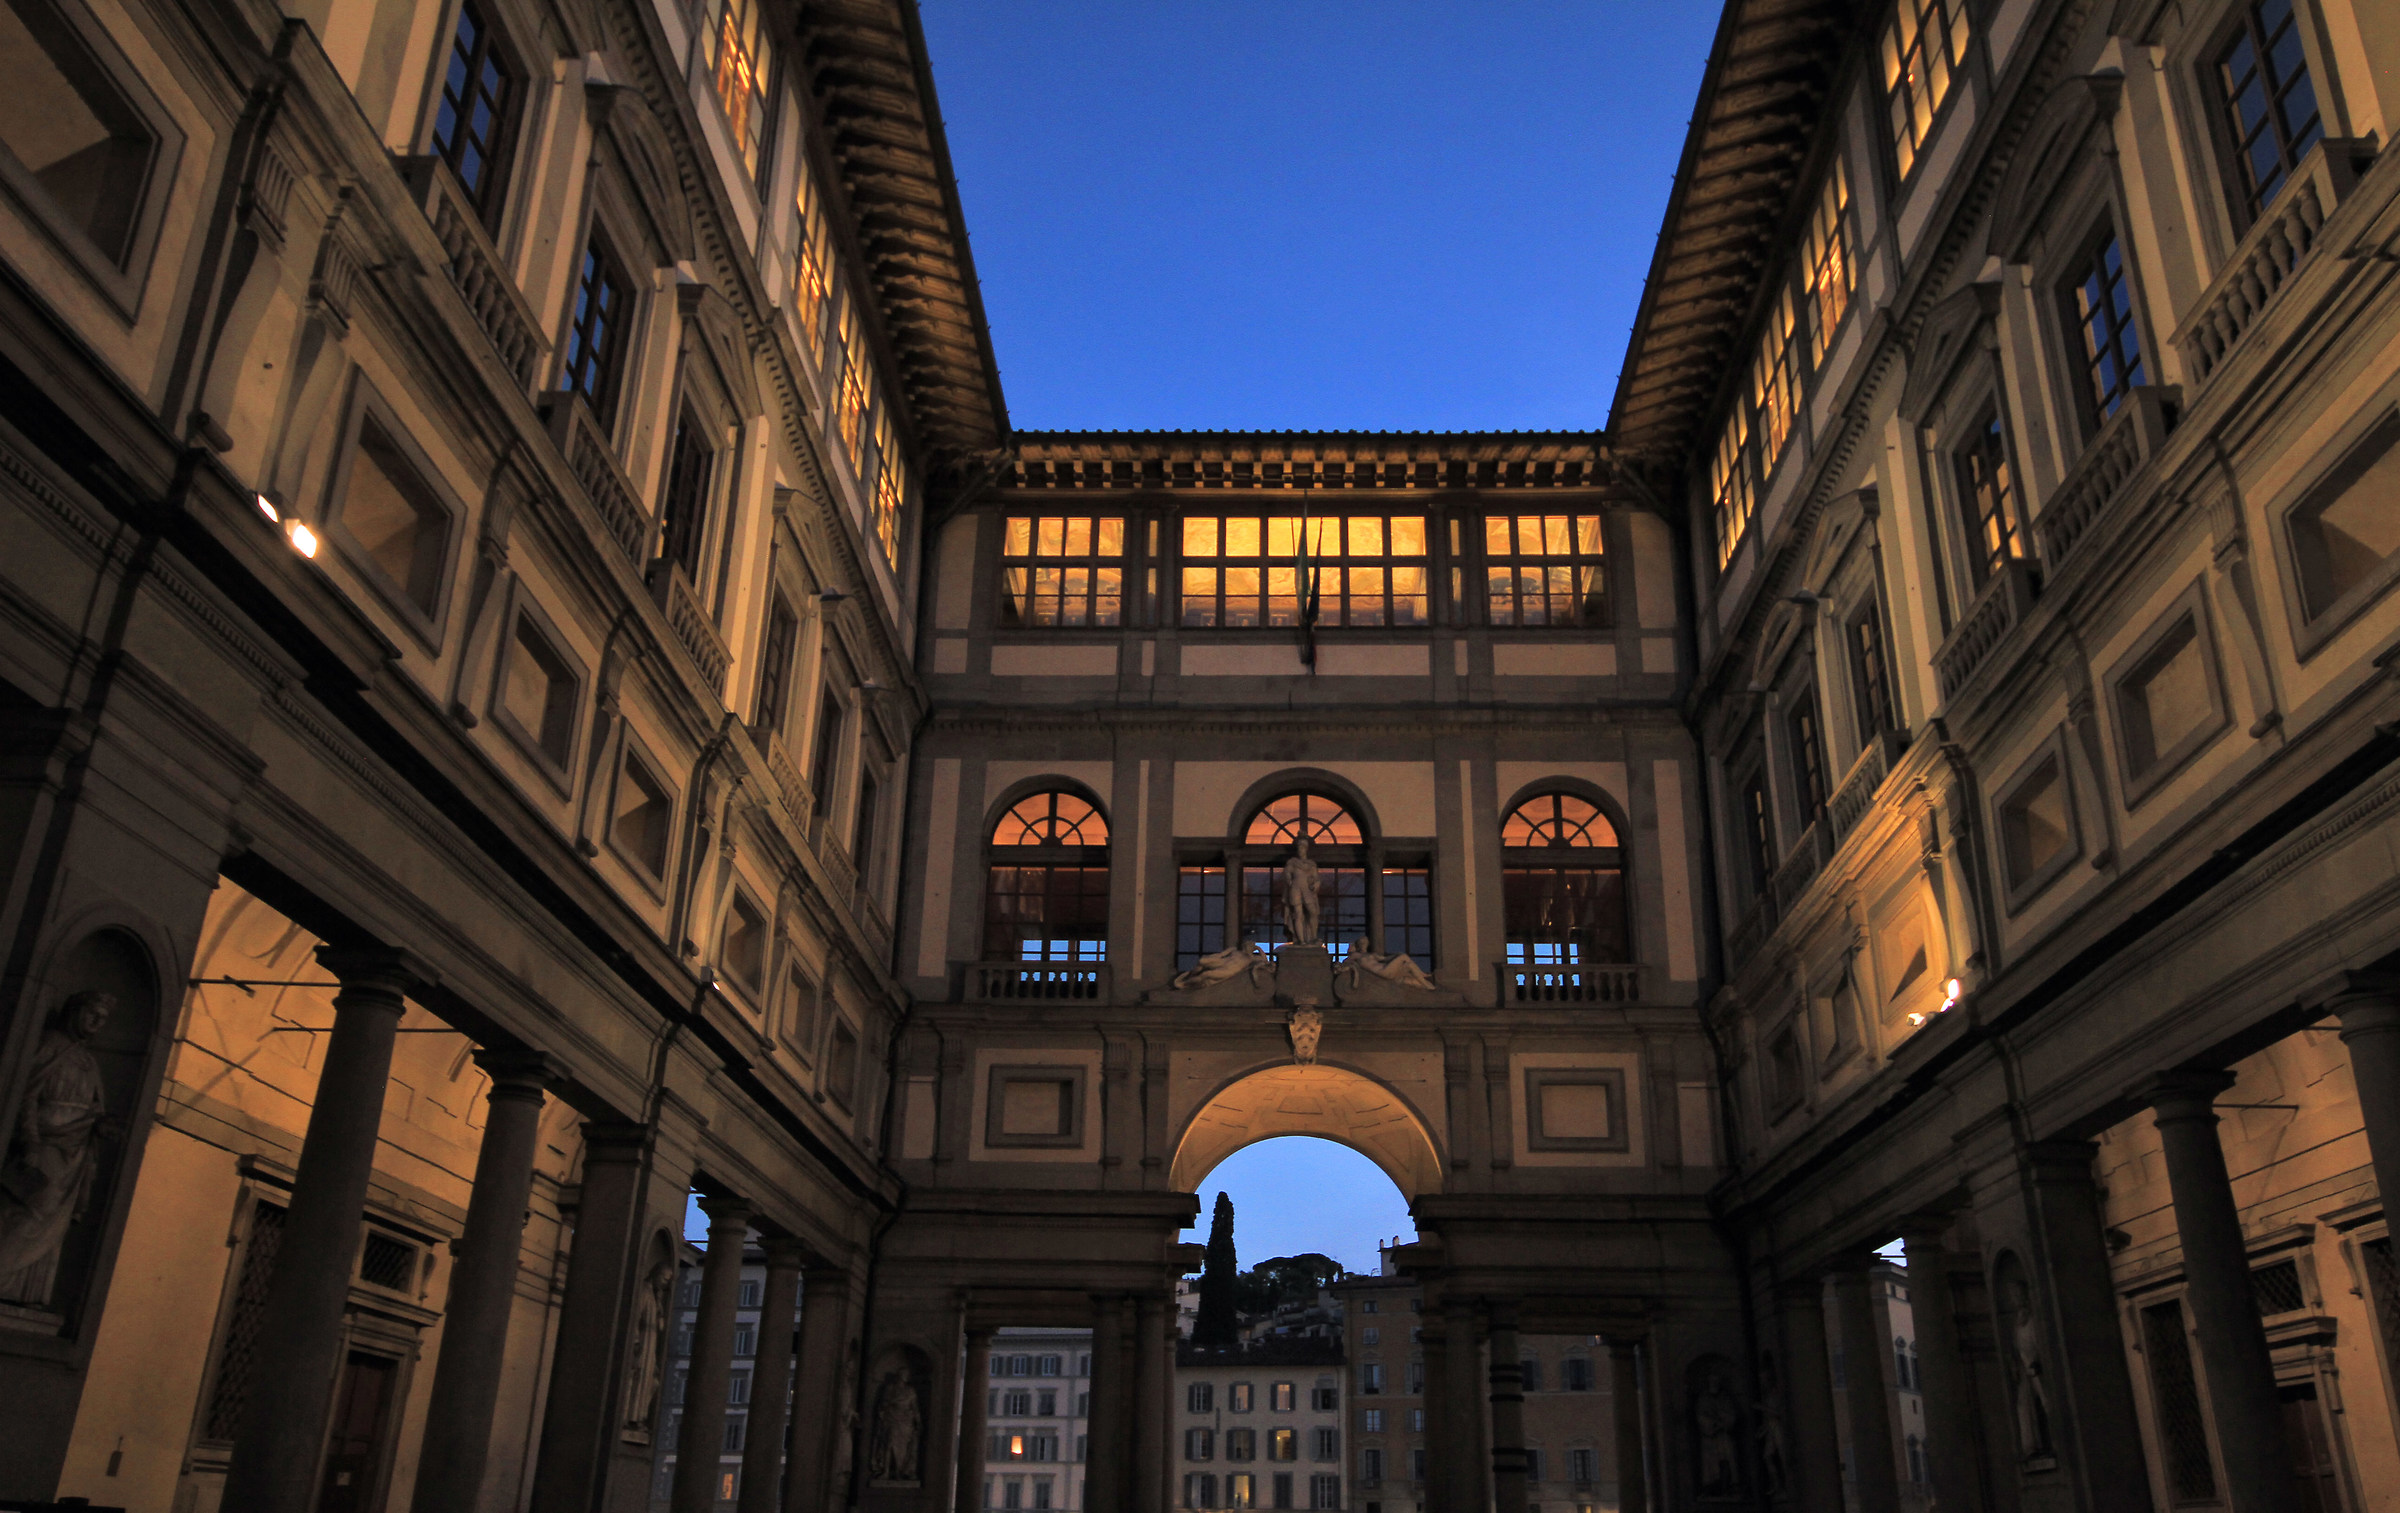 Uffizi by night...